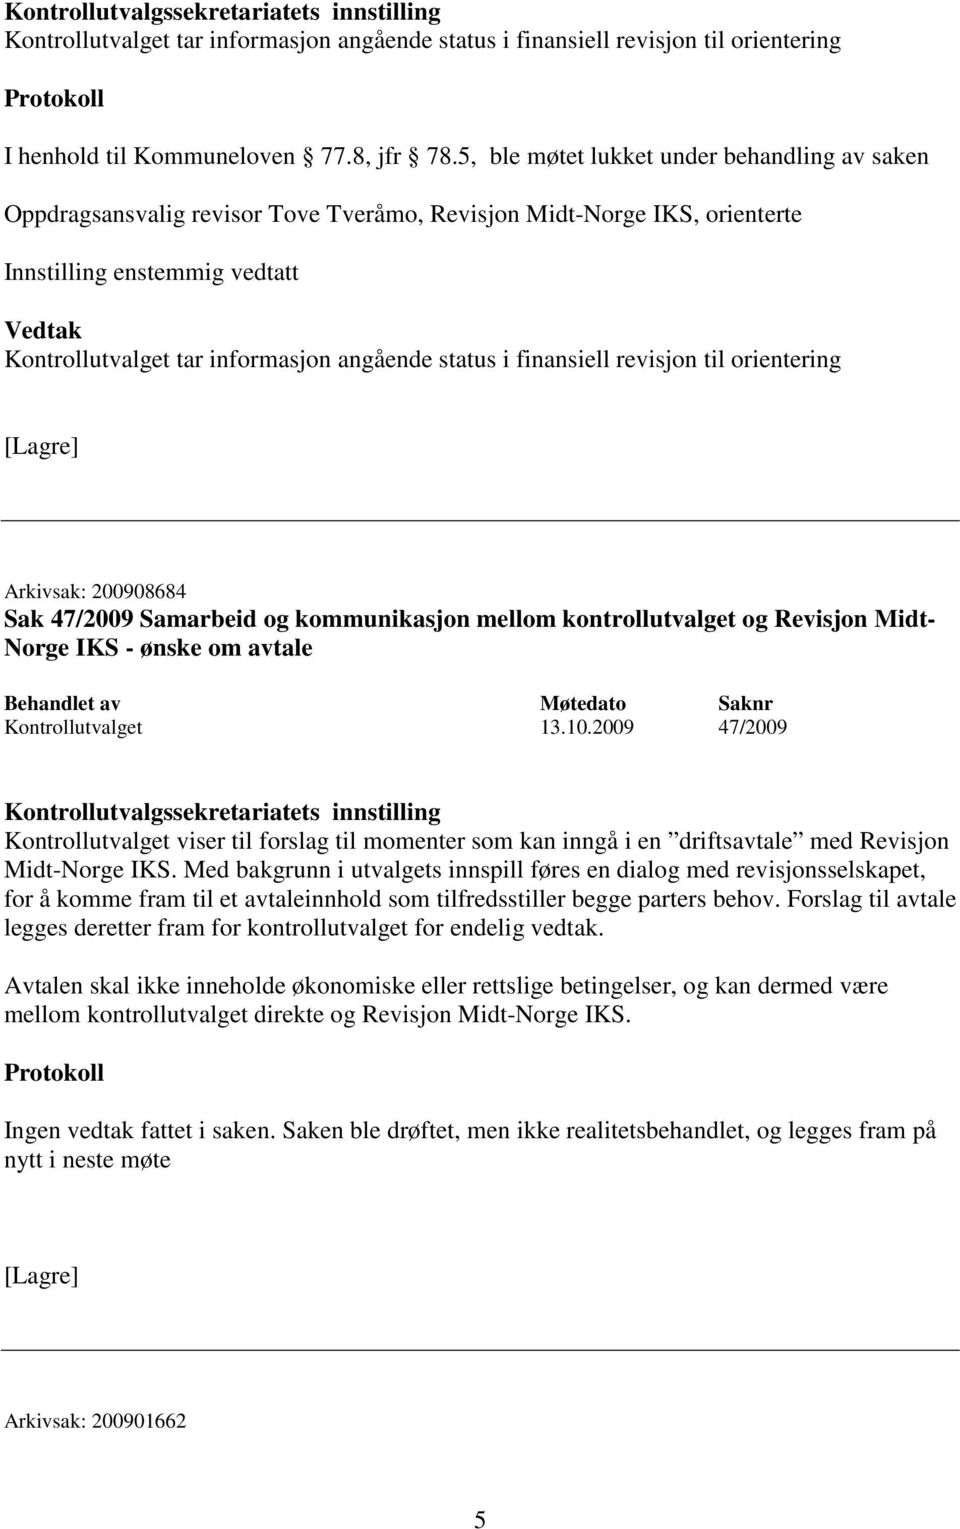 orientering Arkivsak: 200908684 Sak 47/2009 Samarbeid og kommunikasjon mellom kontrollutvalget og Revisjon Midt- Norge IKS - ønske om avtale Kontrollutvalget 13.10.